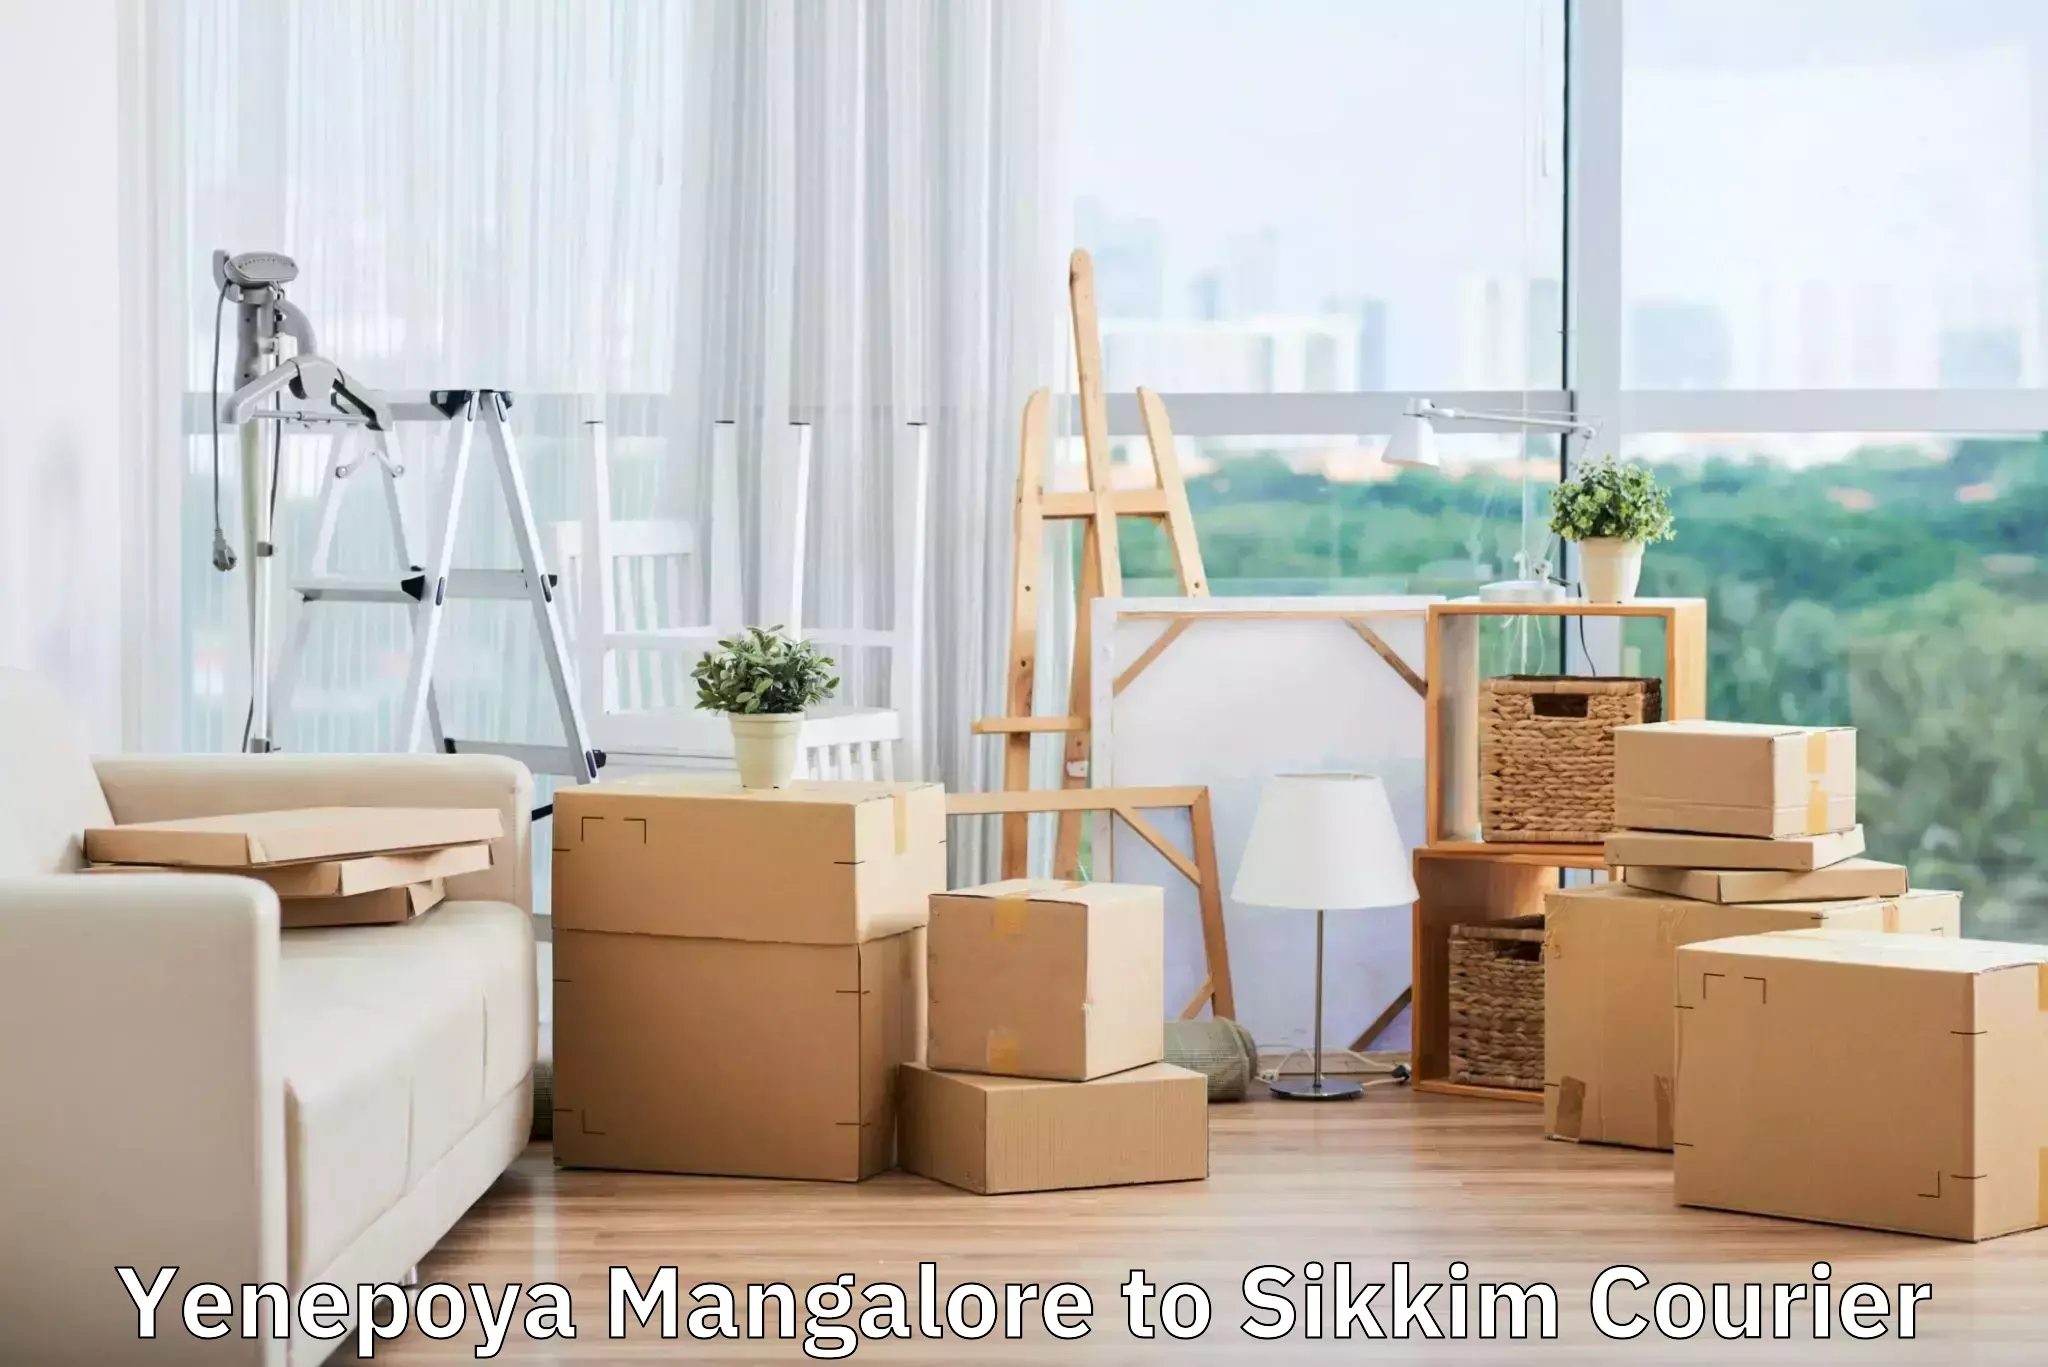 Luggage shipment processing Yenepoya Mangalore to Mangan